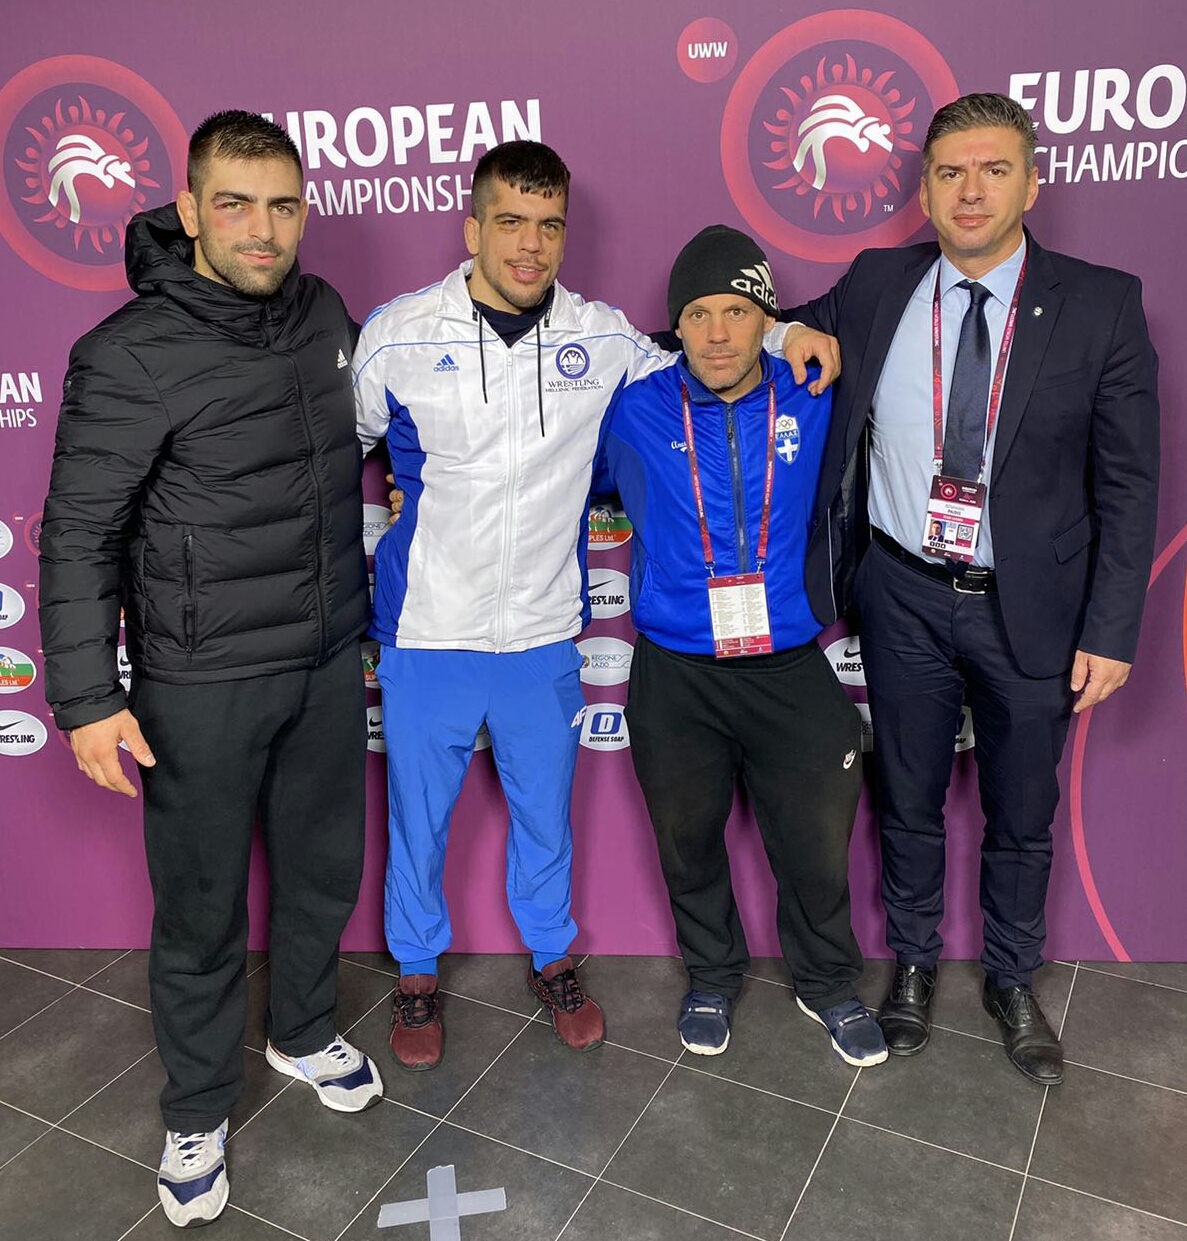 Αρχηγός τη Εθνικής Ομάδας Πάλης στο Ευρωπαϊκό Πρωτάθλημα ο Θανάσης Παιδής